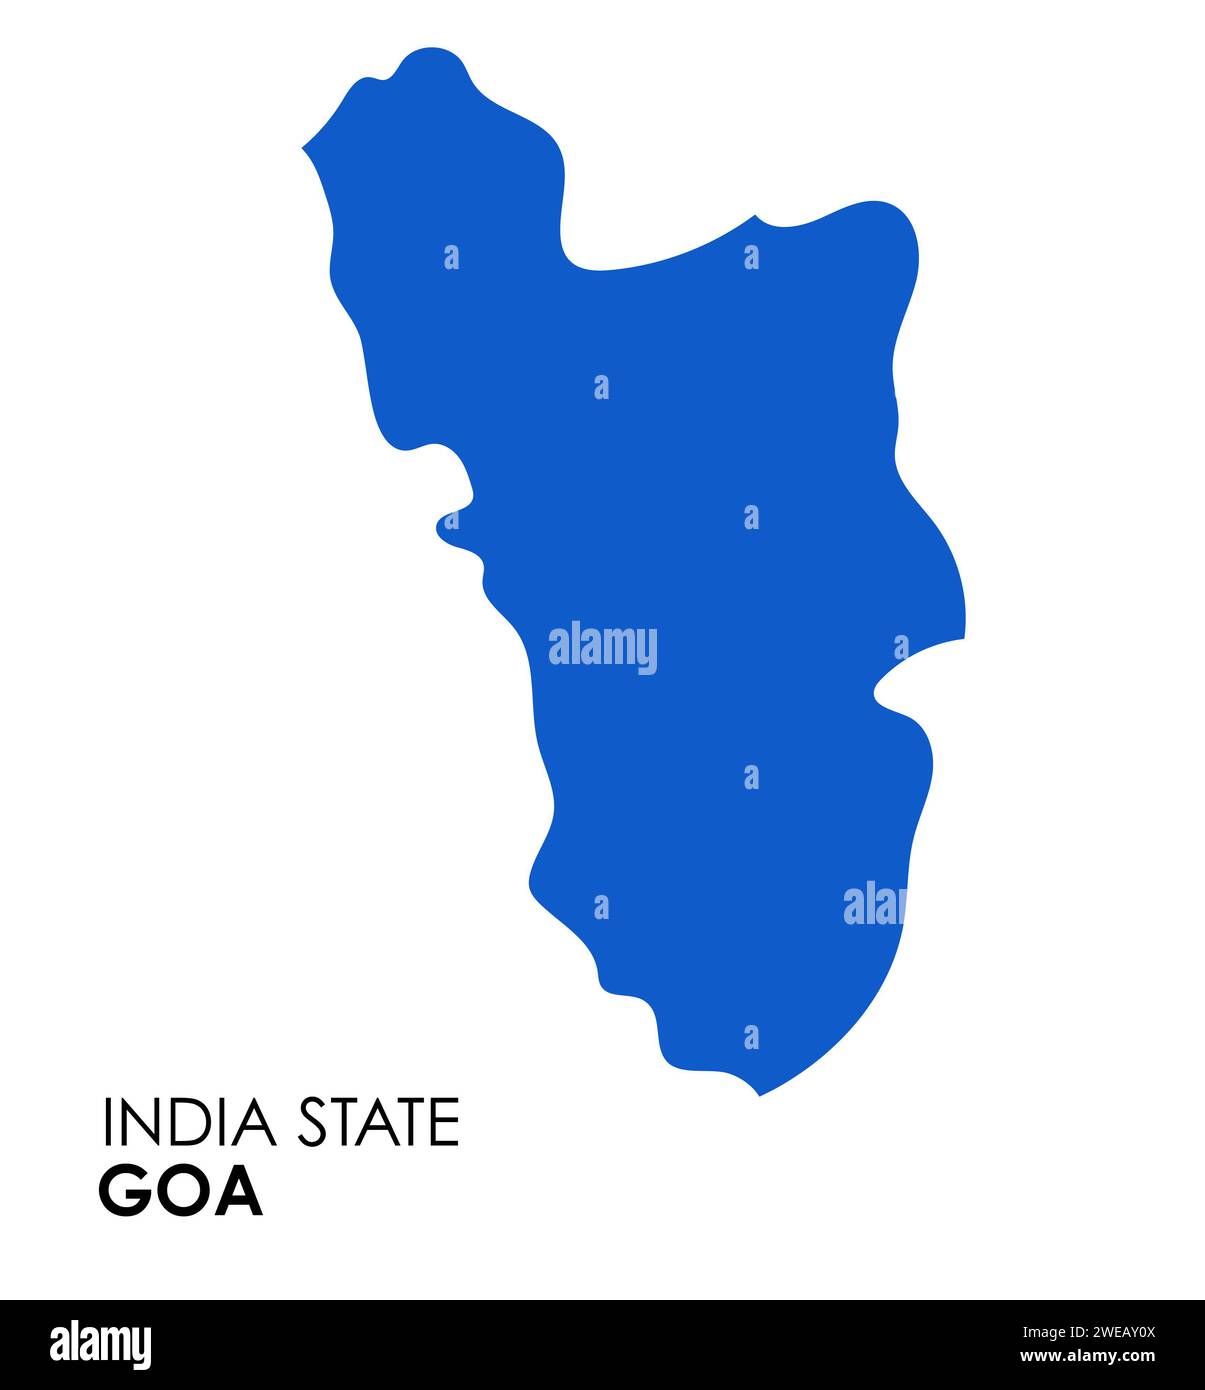 Carte Goa de l'état indien. Illustration vectorielle de carte Goa. Carte vectorielle Goa sur fond blanc. Banque D'Images